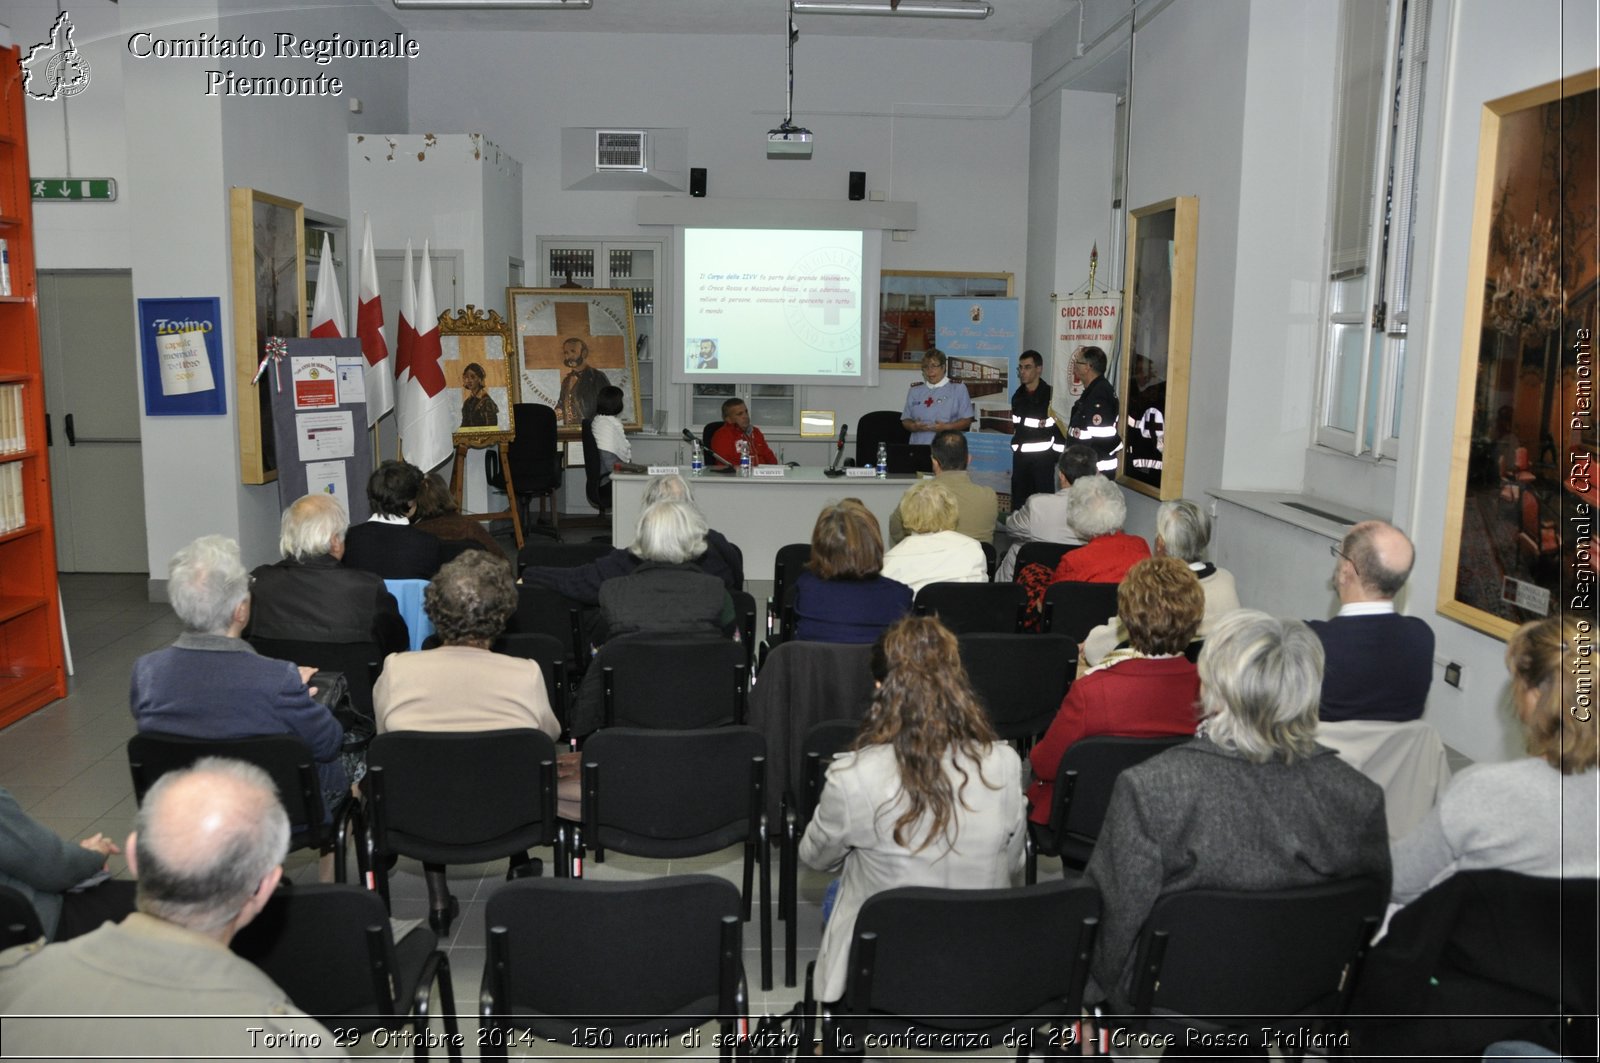 Torino 29 Ottobre 2014 - 150 anni di servizio - la conferenza del 29 - Croce Rossa Italiana- Comitato Regionale del Piemonte